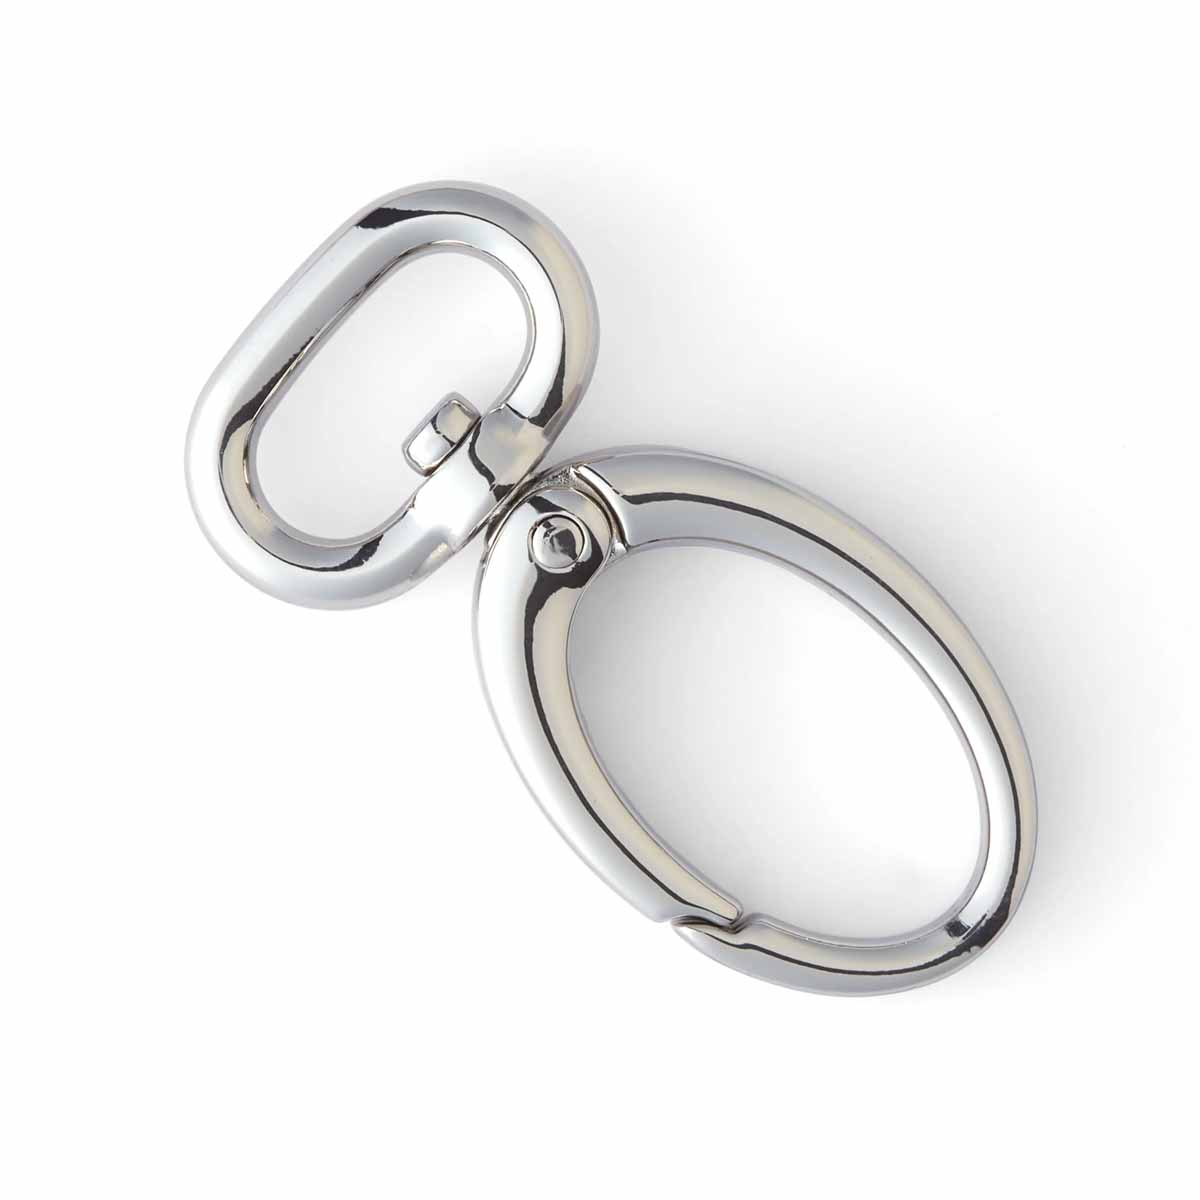 Mousqueton ovale anneau oblong 15 mm- Bouclerie - Cuir en Stock